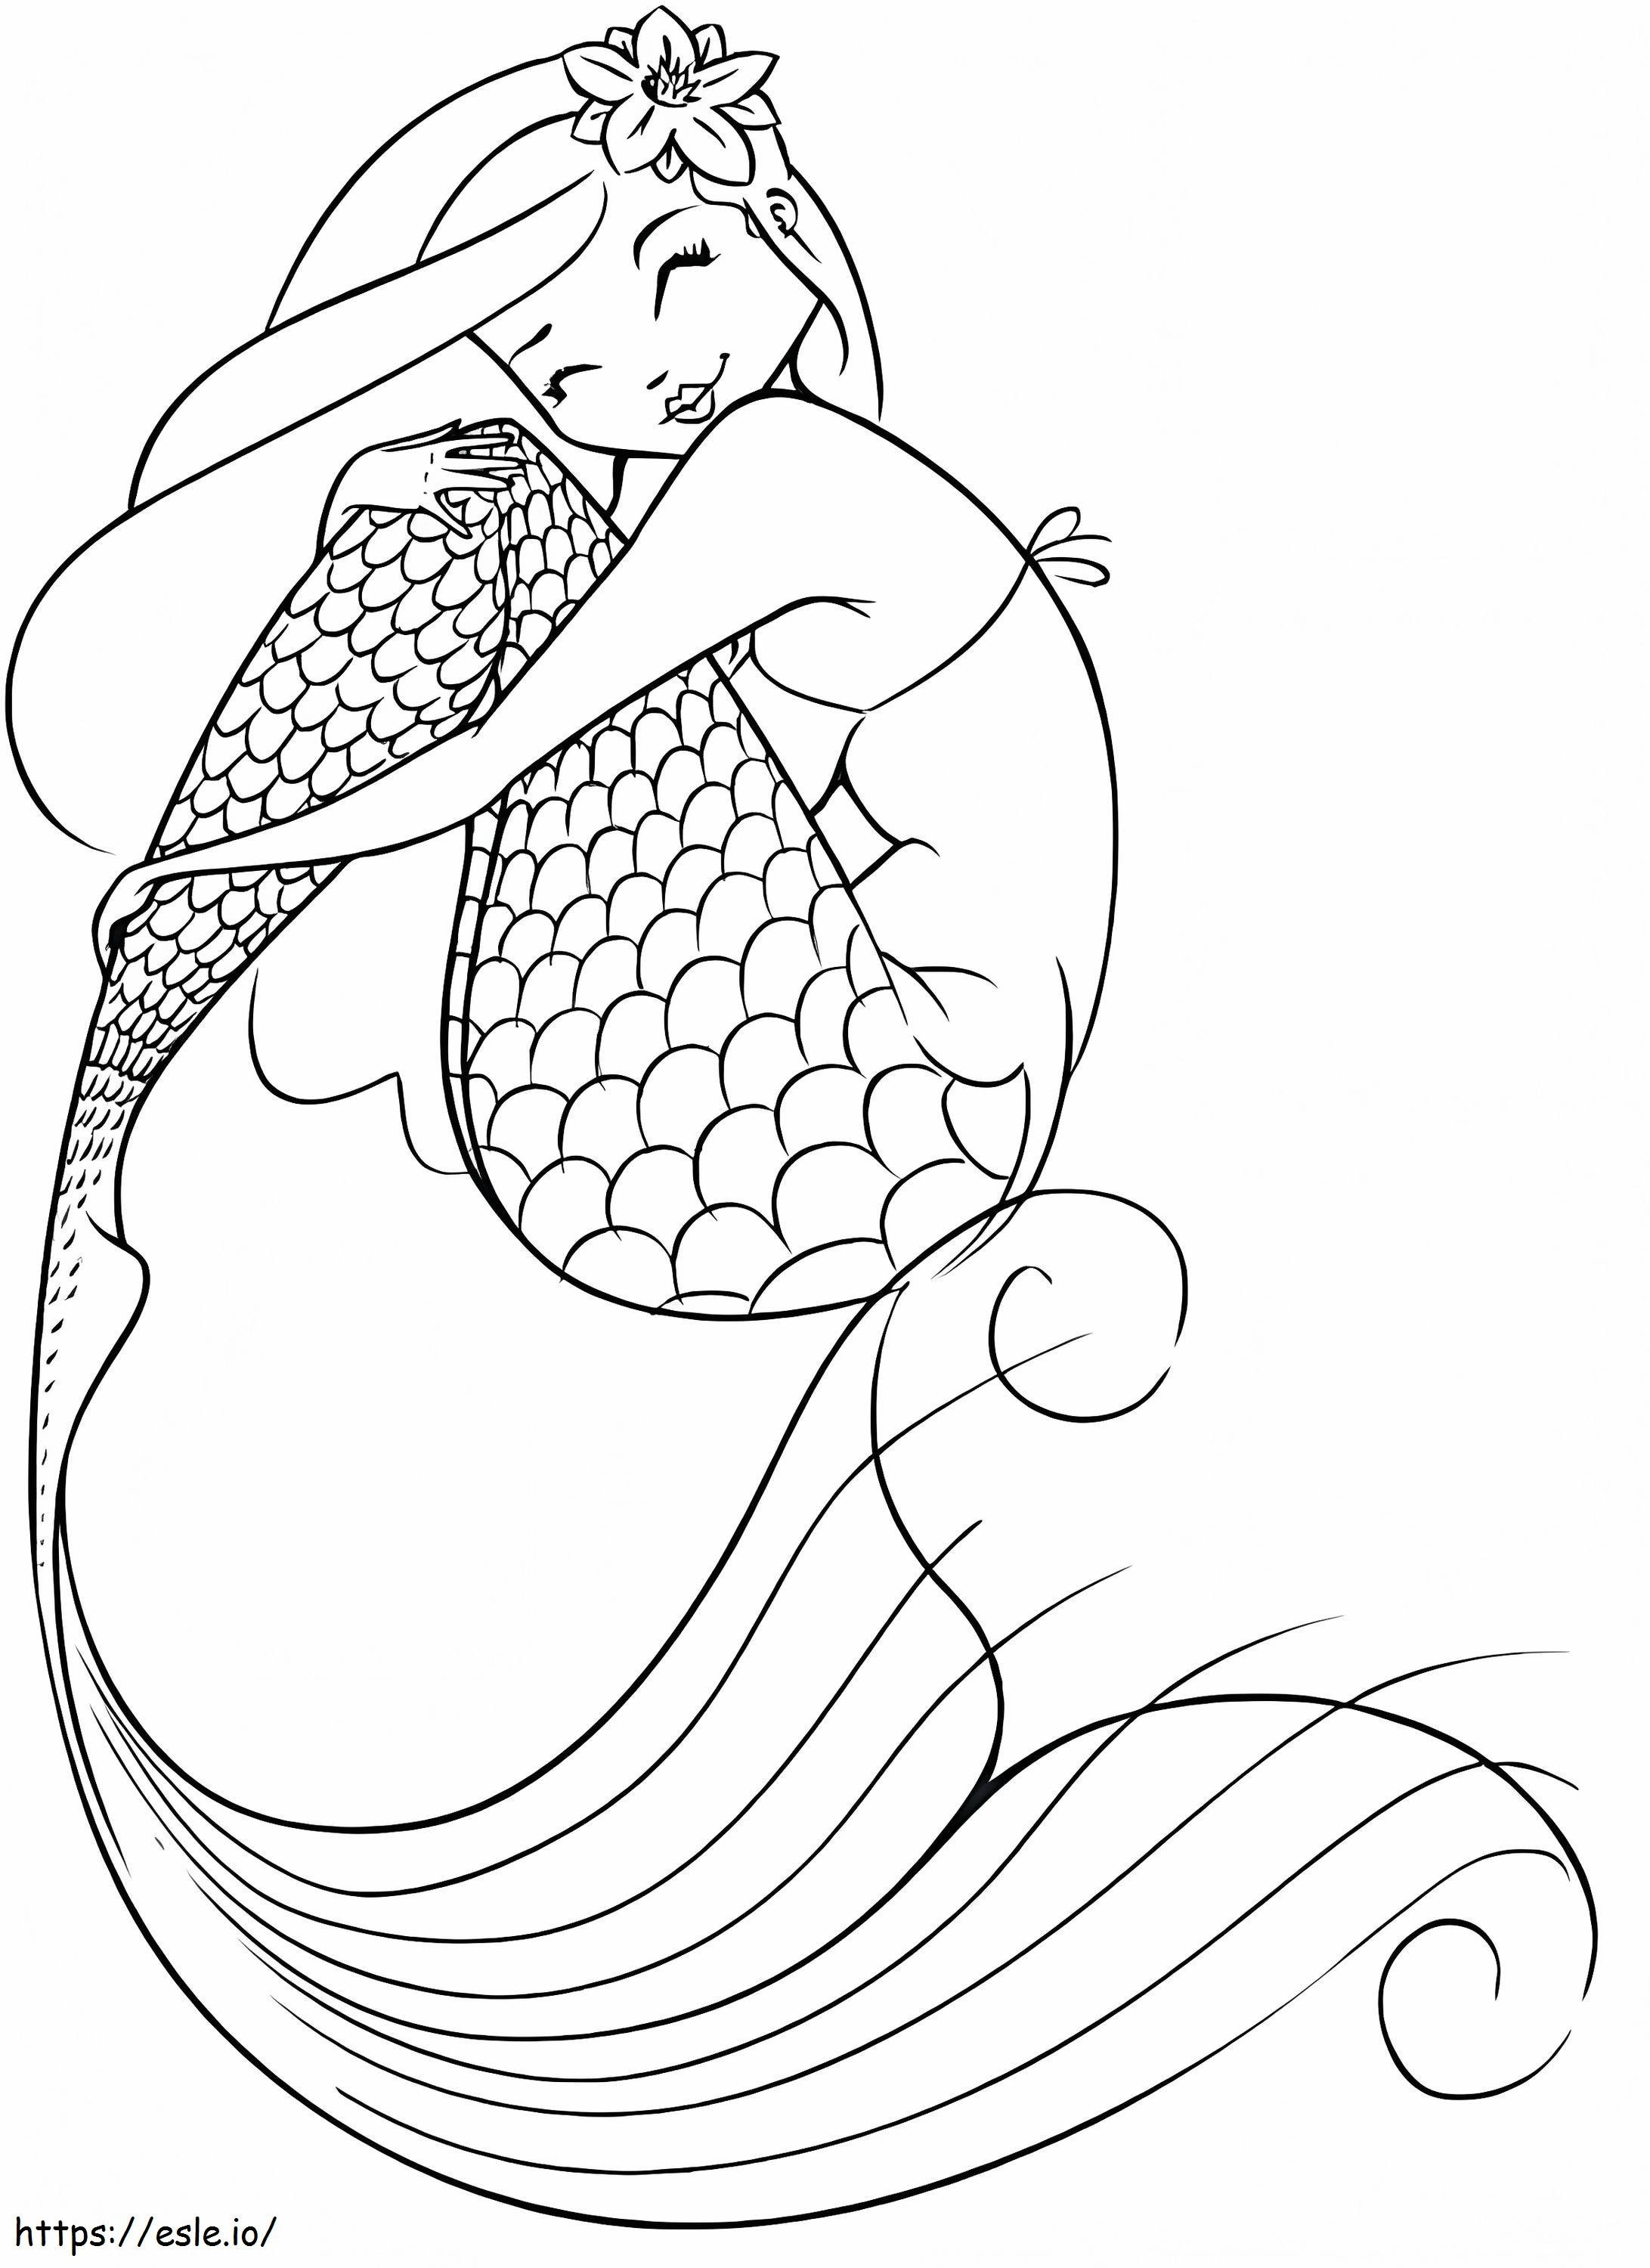 Wonderful Mermaid coloring page